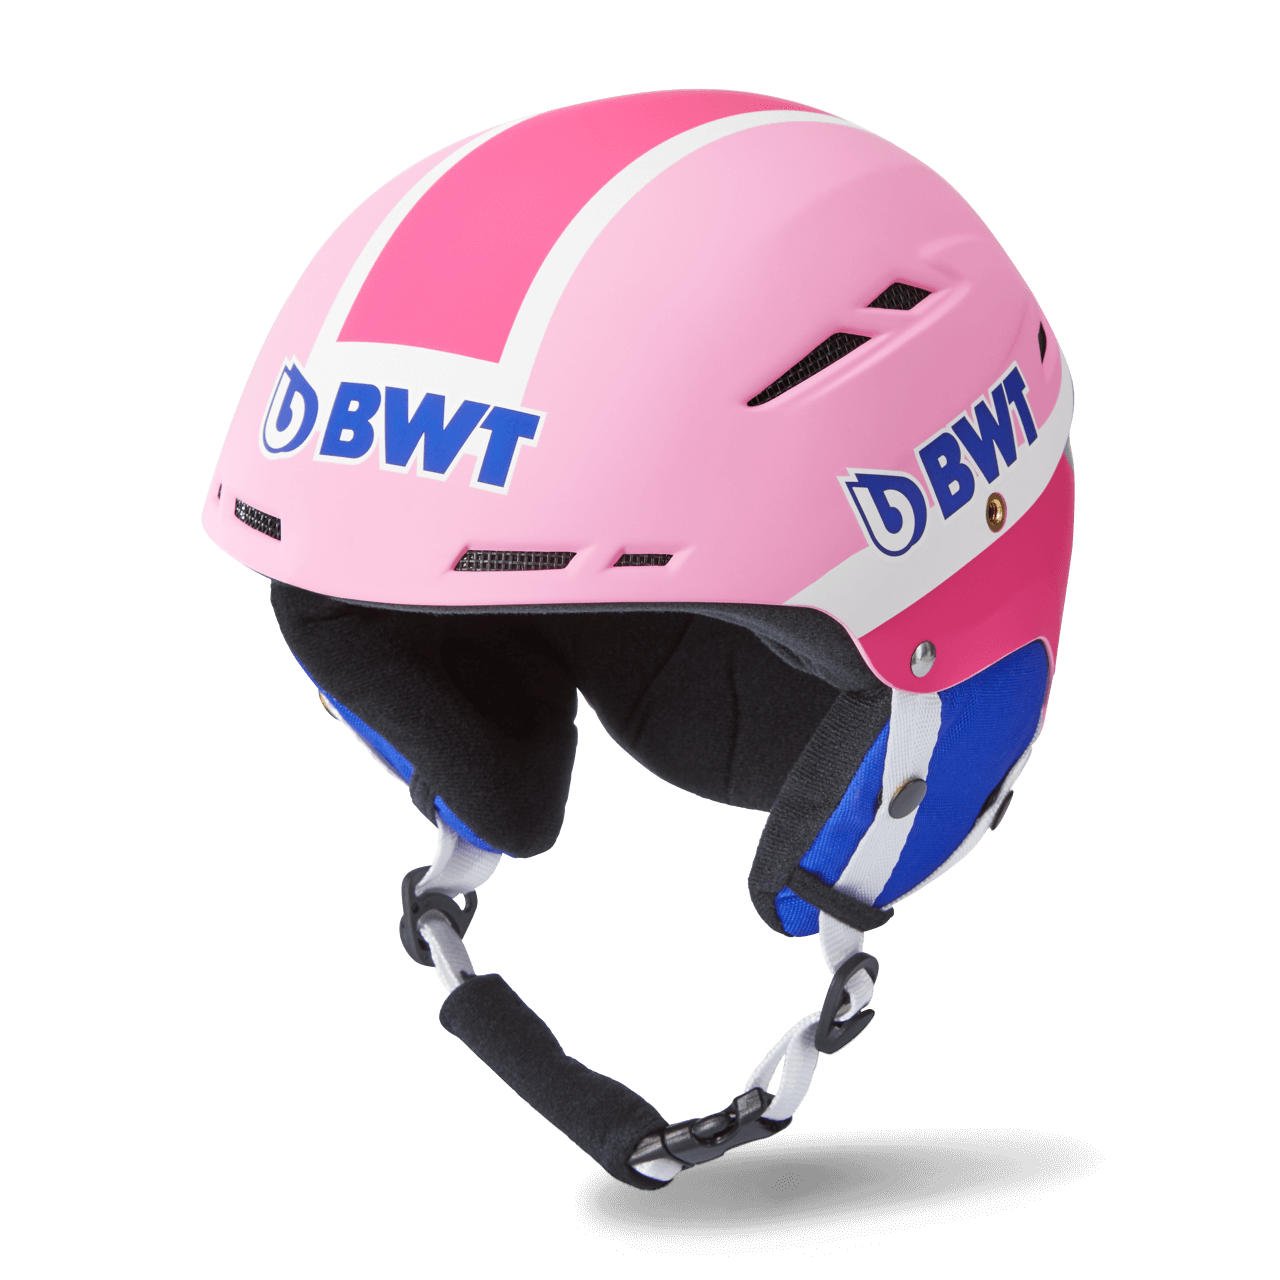 BWT Freeride ski helmet in pink with blue BWT logo